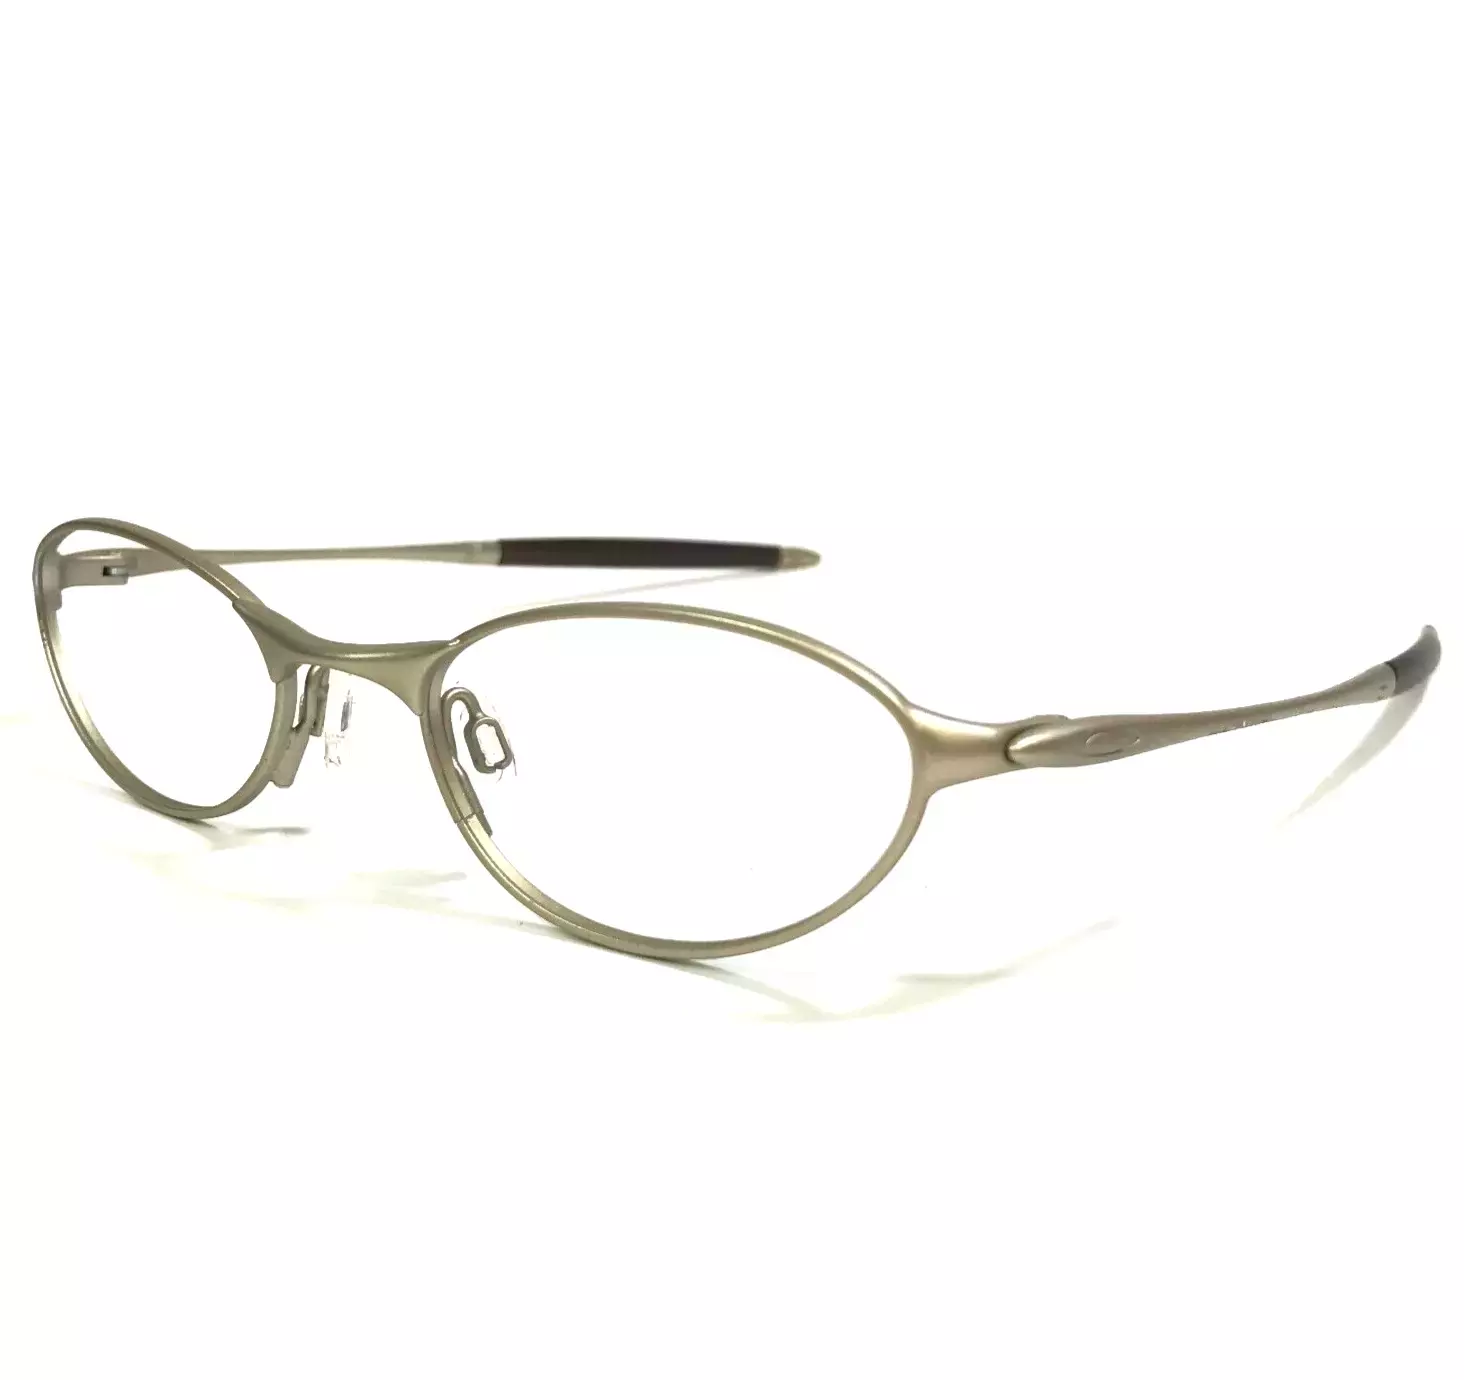 Oakley Vintage Eyeglasses Frames 01 11 600 Platinummatte Light Gold